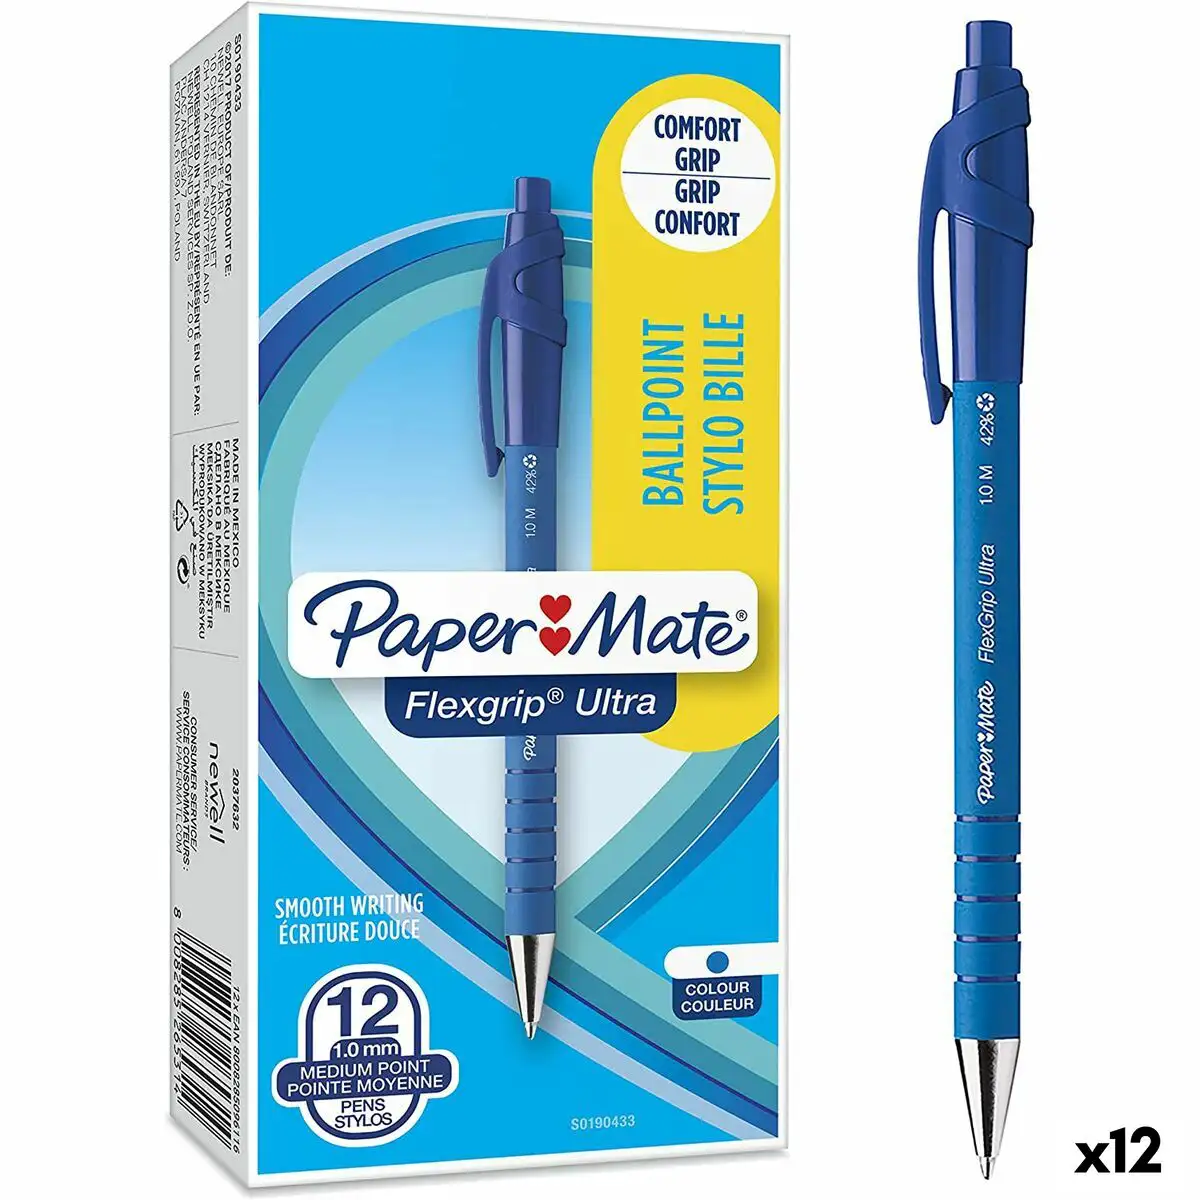 Crayon paper mate flexgrip ultra 12 pieces bleu 1 mm 12 unites _4276. Bienvenue chez DIAYTAR SENEGAL - Où Choisir est un Voyage. Plongez dans notre plateforme en ligne pour trouver des produits qui ajoutent de la couleur et de la texture à votre quotidien.